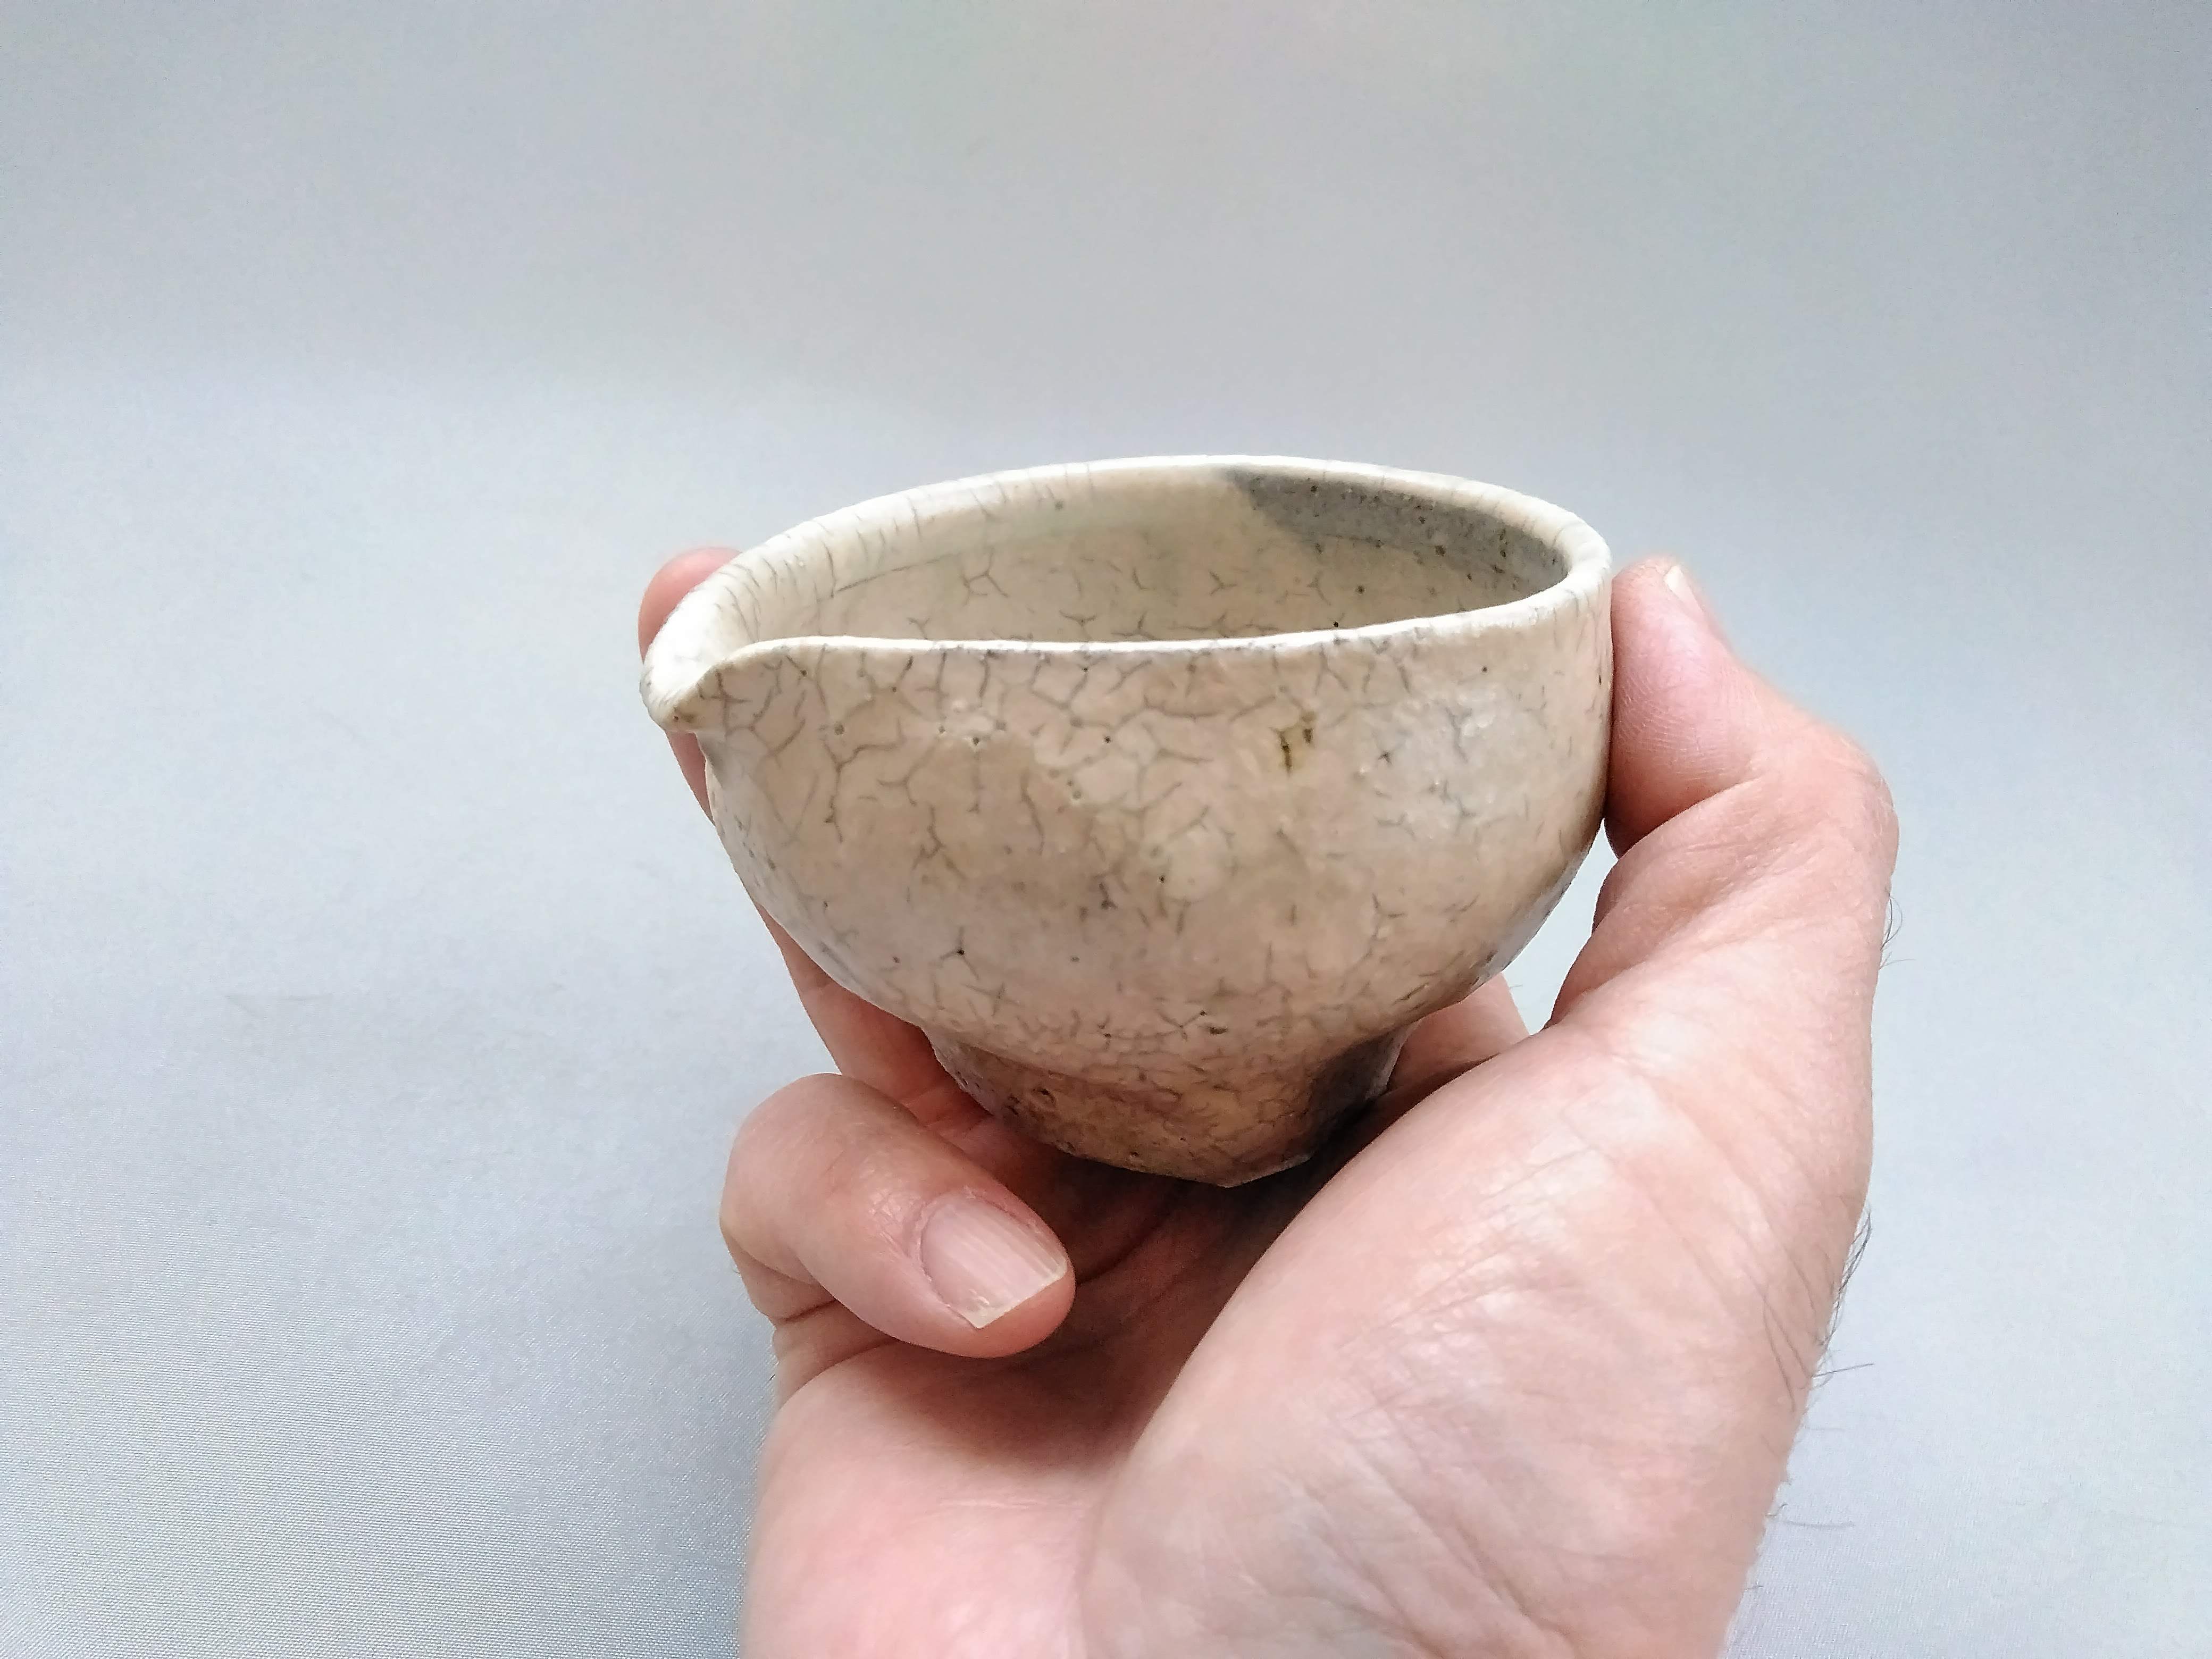 Vidro powdered bean bowl [Kazuhito Yamamoto]